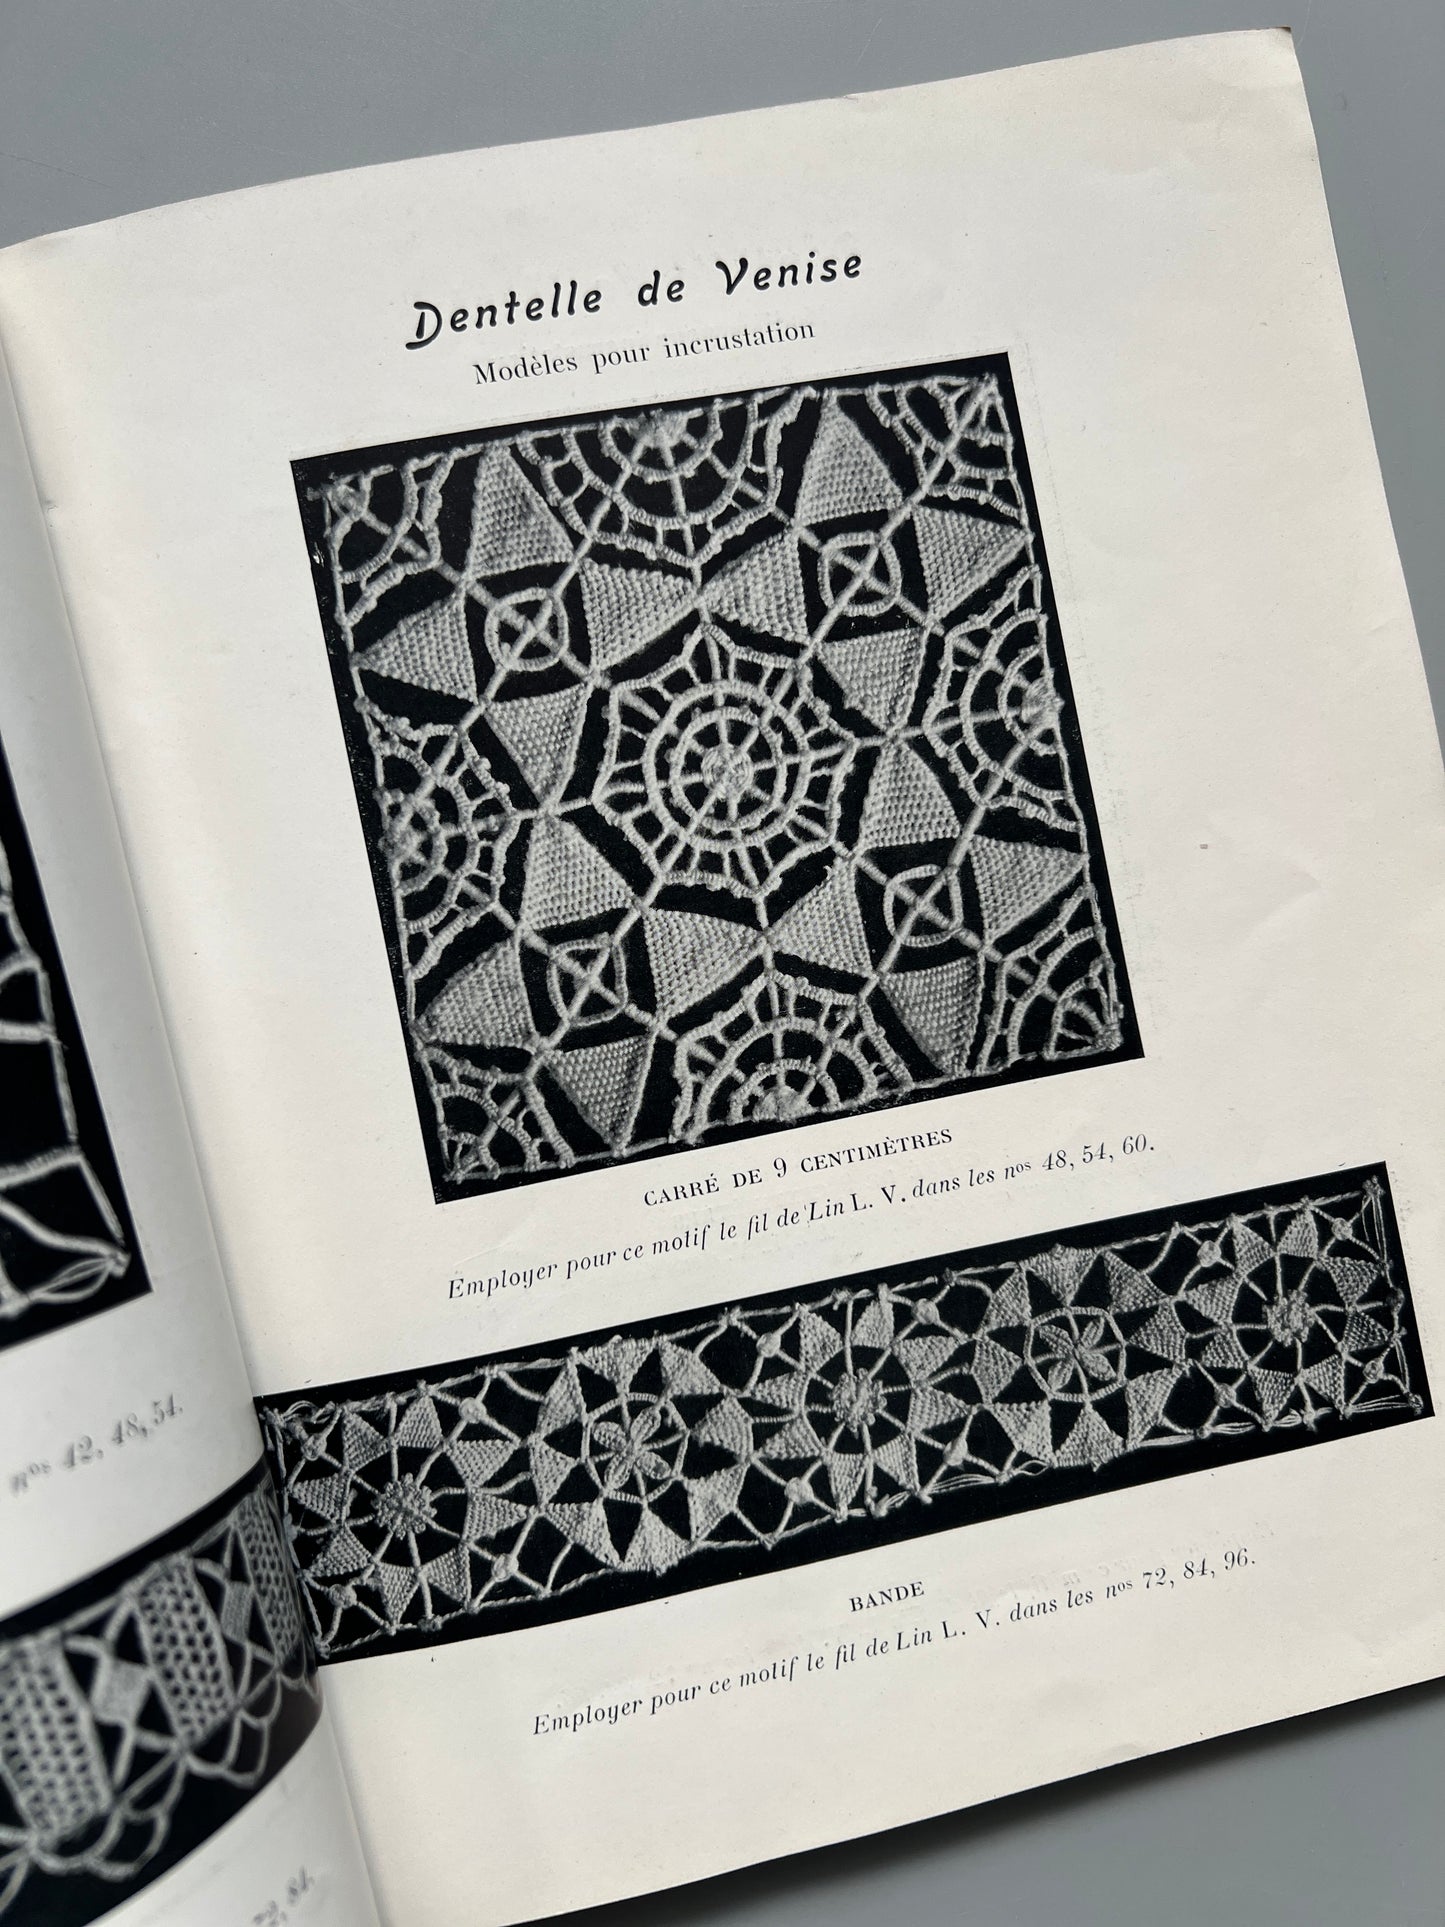 Album de Dentelle de Venise, Madame Hardouin - Manufacture parisienne des cotons L.V et M. F. A., ca. 1920